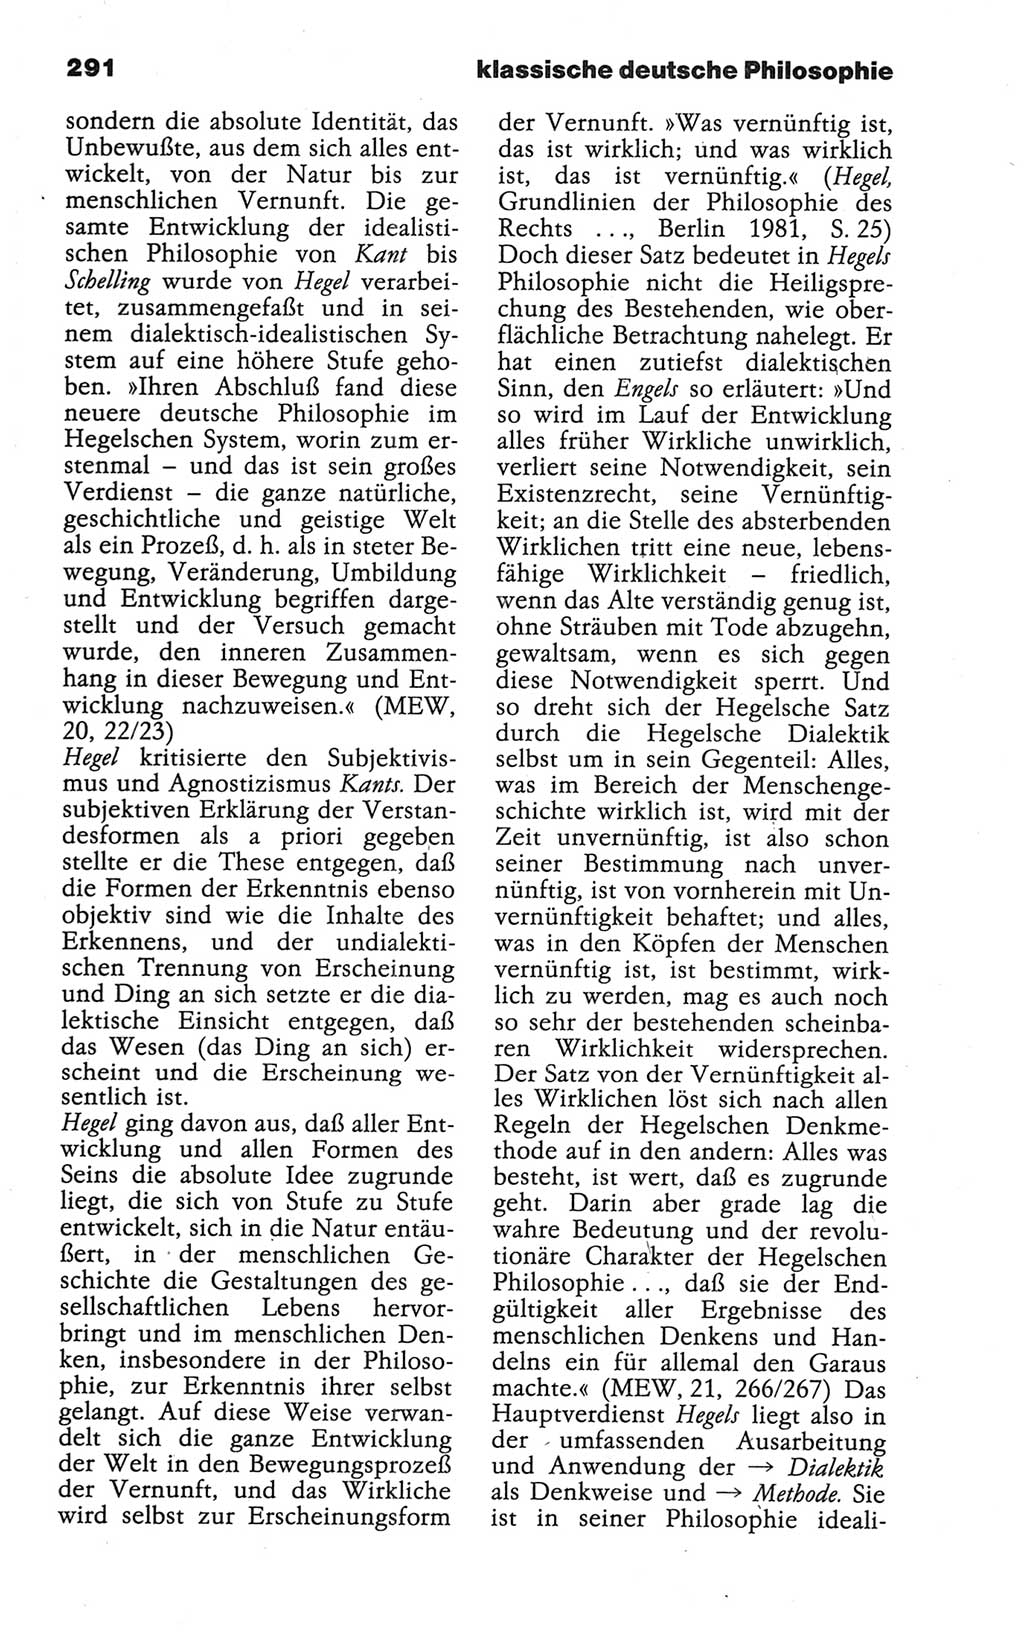 Wörterbuch der marxistisch-leninistischen Philosophie [Deutsche Demokratische Republik (DDR)] 1986, Seite 291 (Wb. ML Phil. DDR 1986, S. 291)